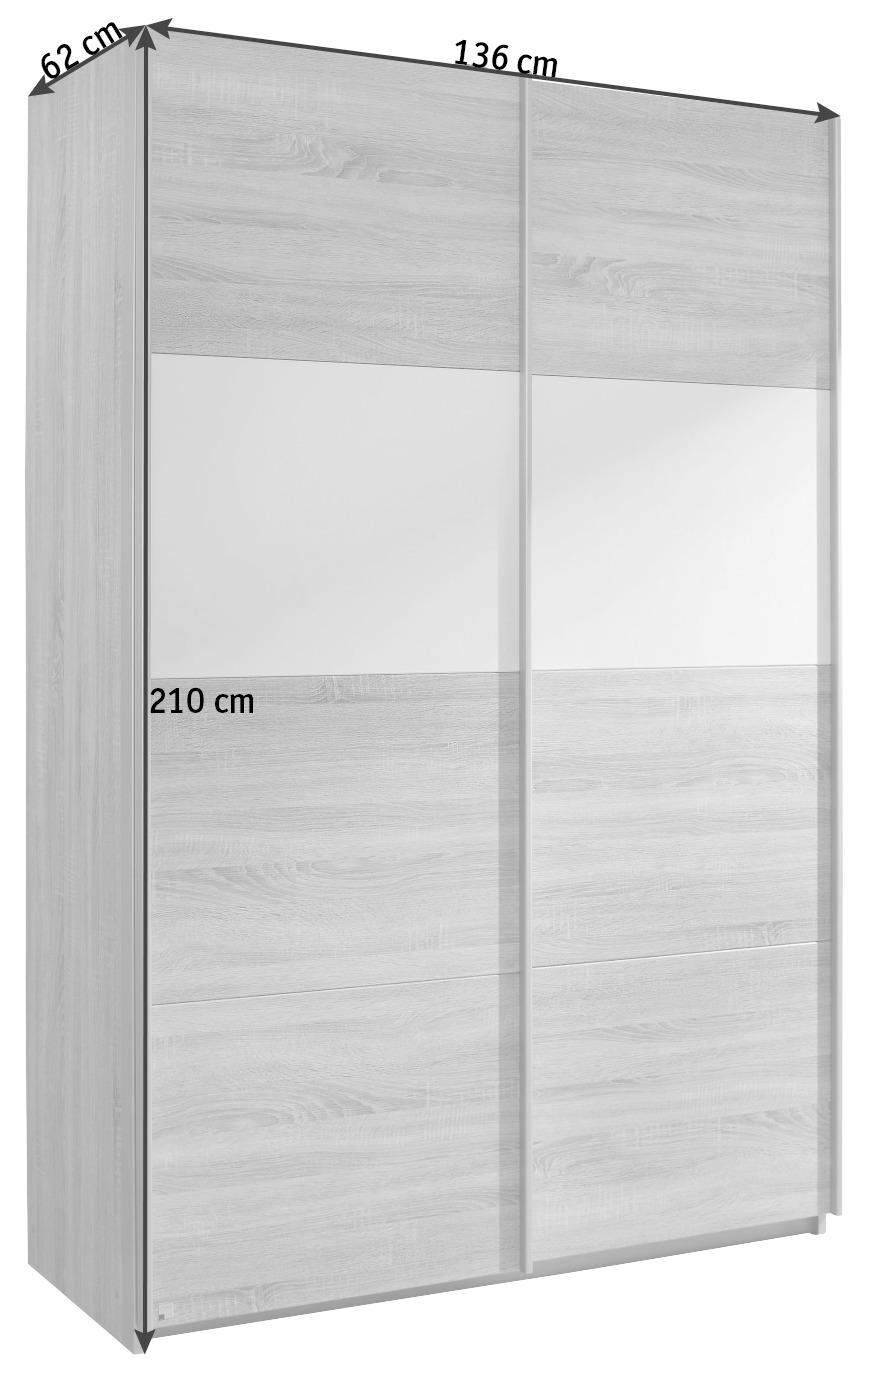 SCHWEBETÜRENSCHRANK 2-türig Weiß, Sonoma Eiche  - Alufarben/Weiß, Basics, Holzwerkstoff/Metall (136/210/62cm) - Carryhome